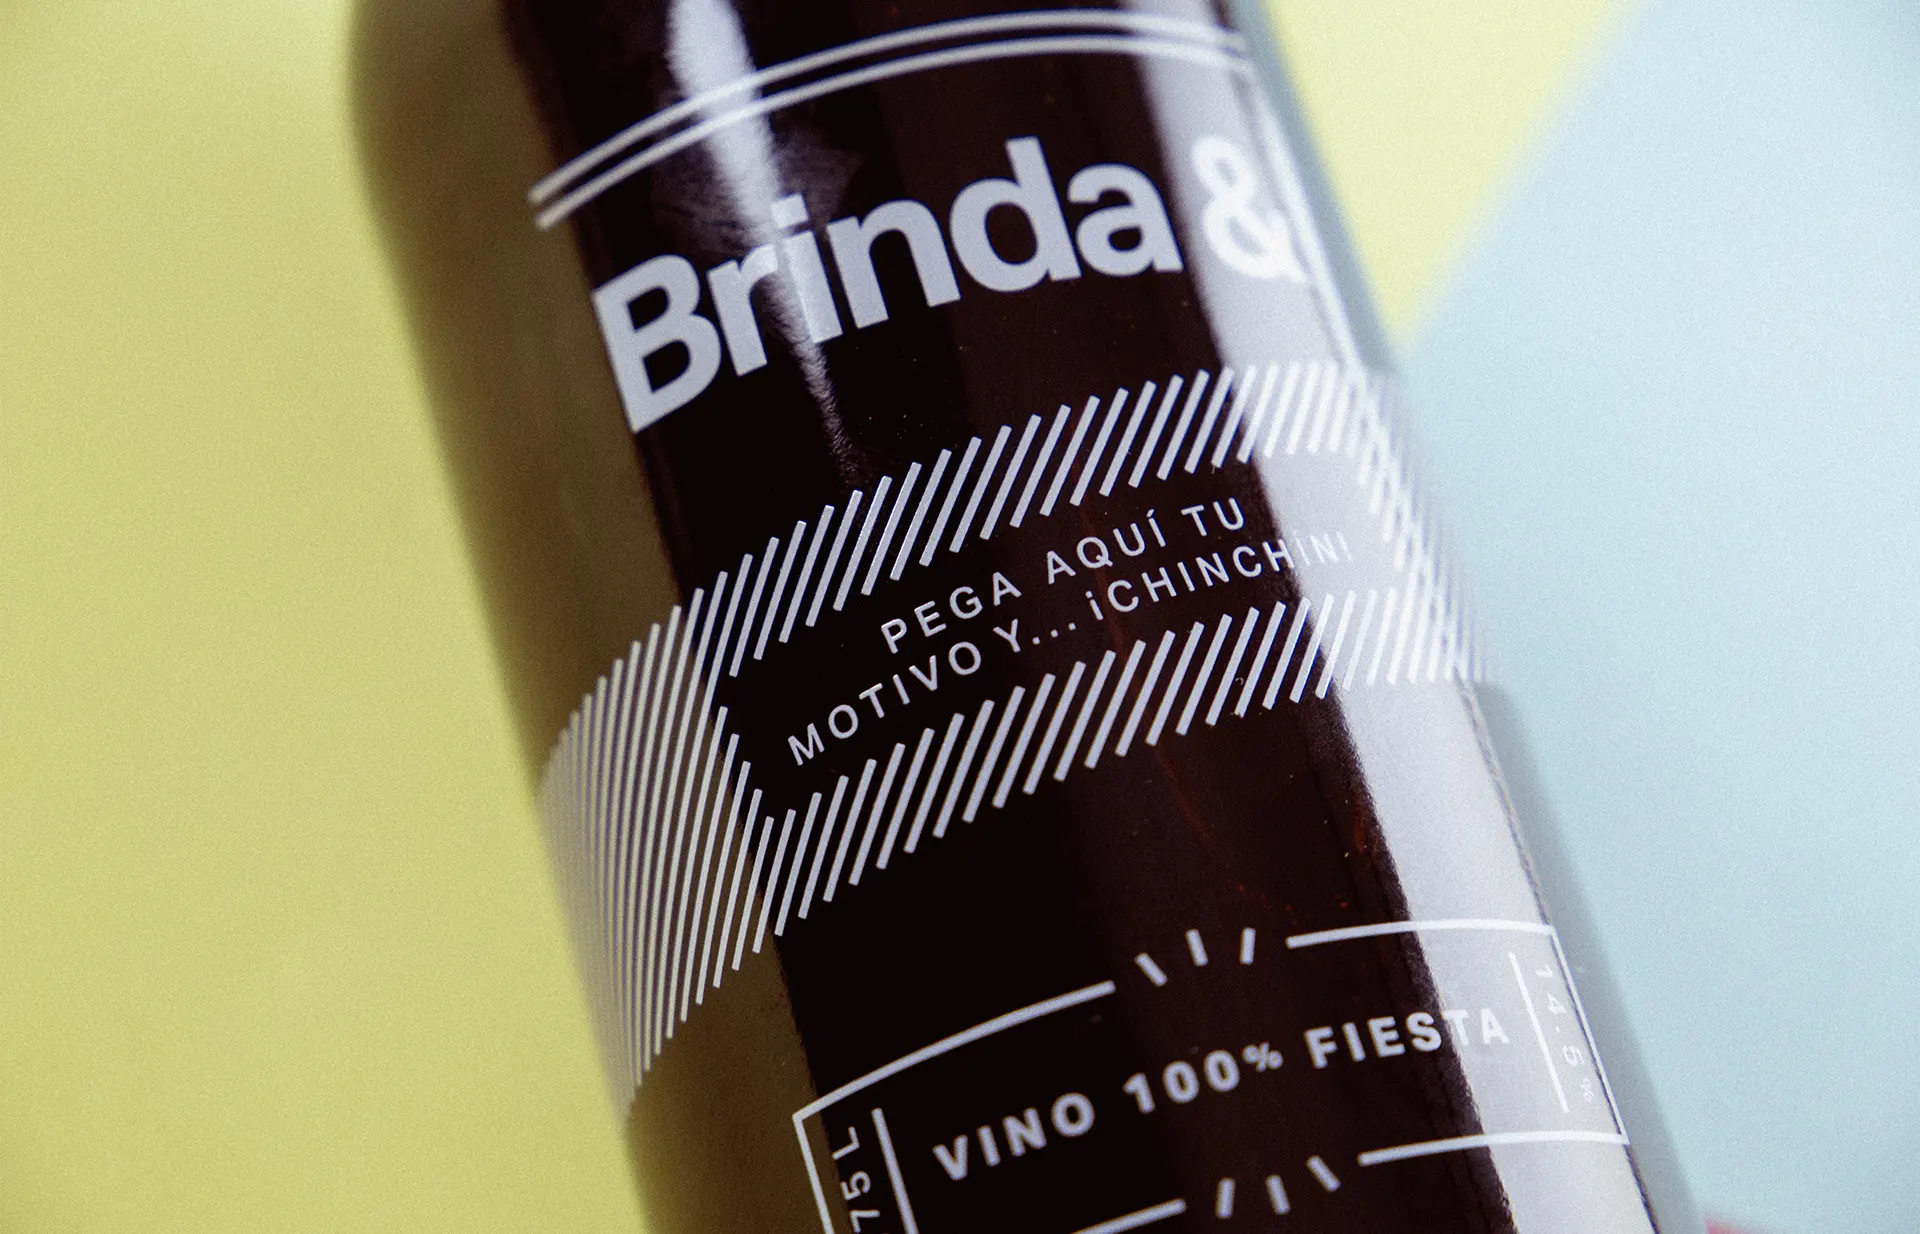 Serigrafía de la botella de Brinda&.